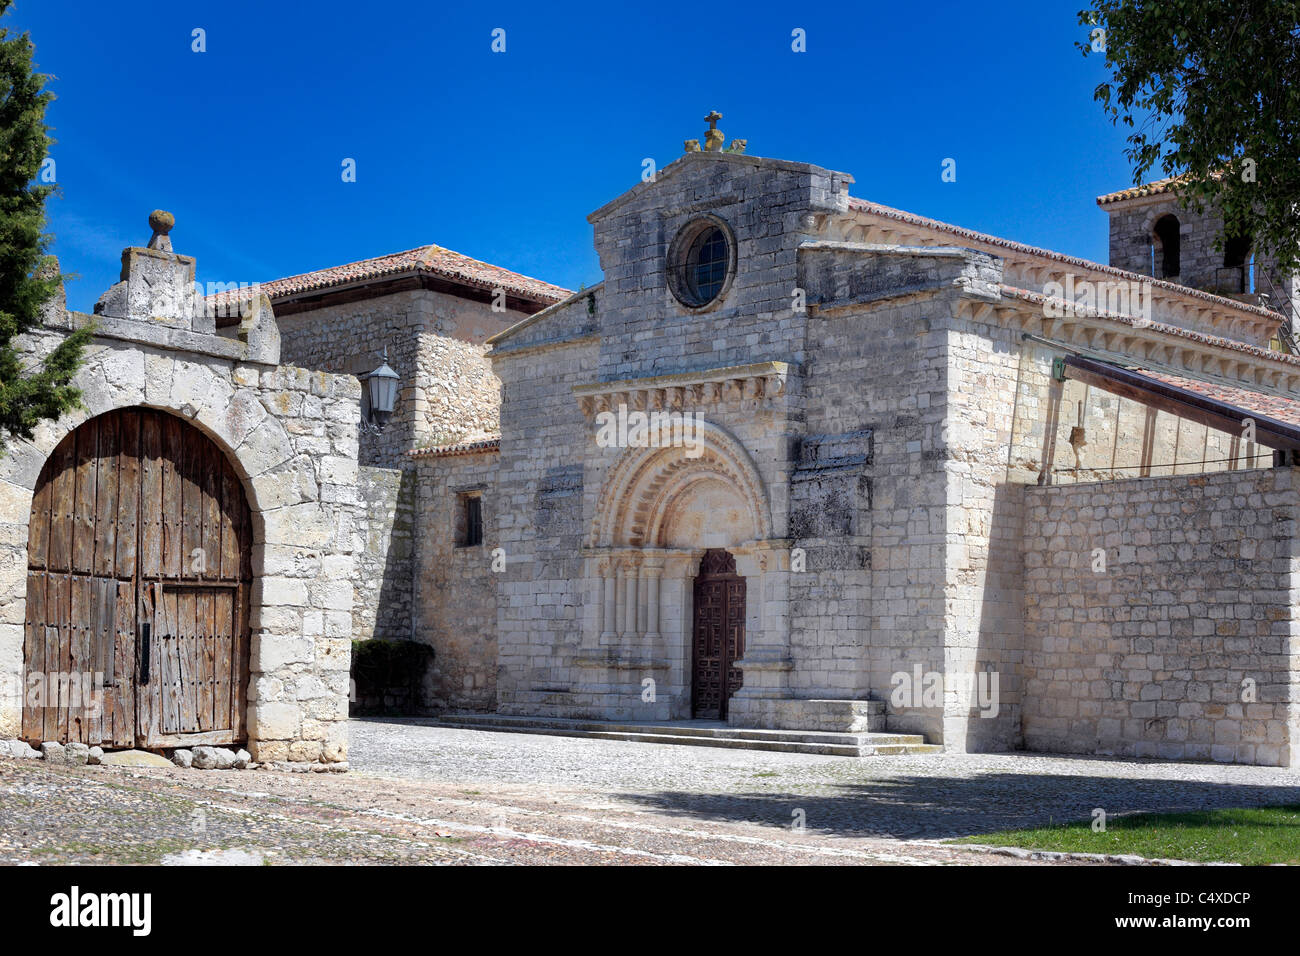 Iglesia románica de Santa María de Wamba (siglo 10), Valladolid, Castilla y León, España Foto de stock